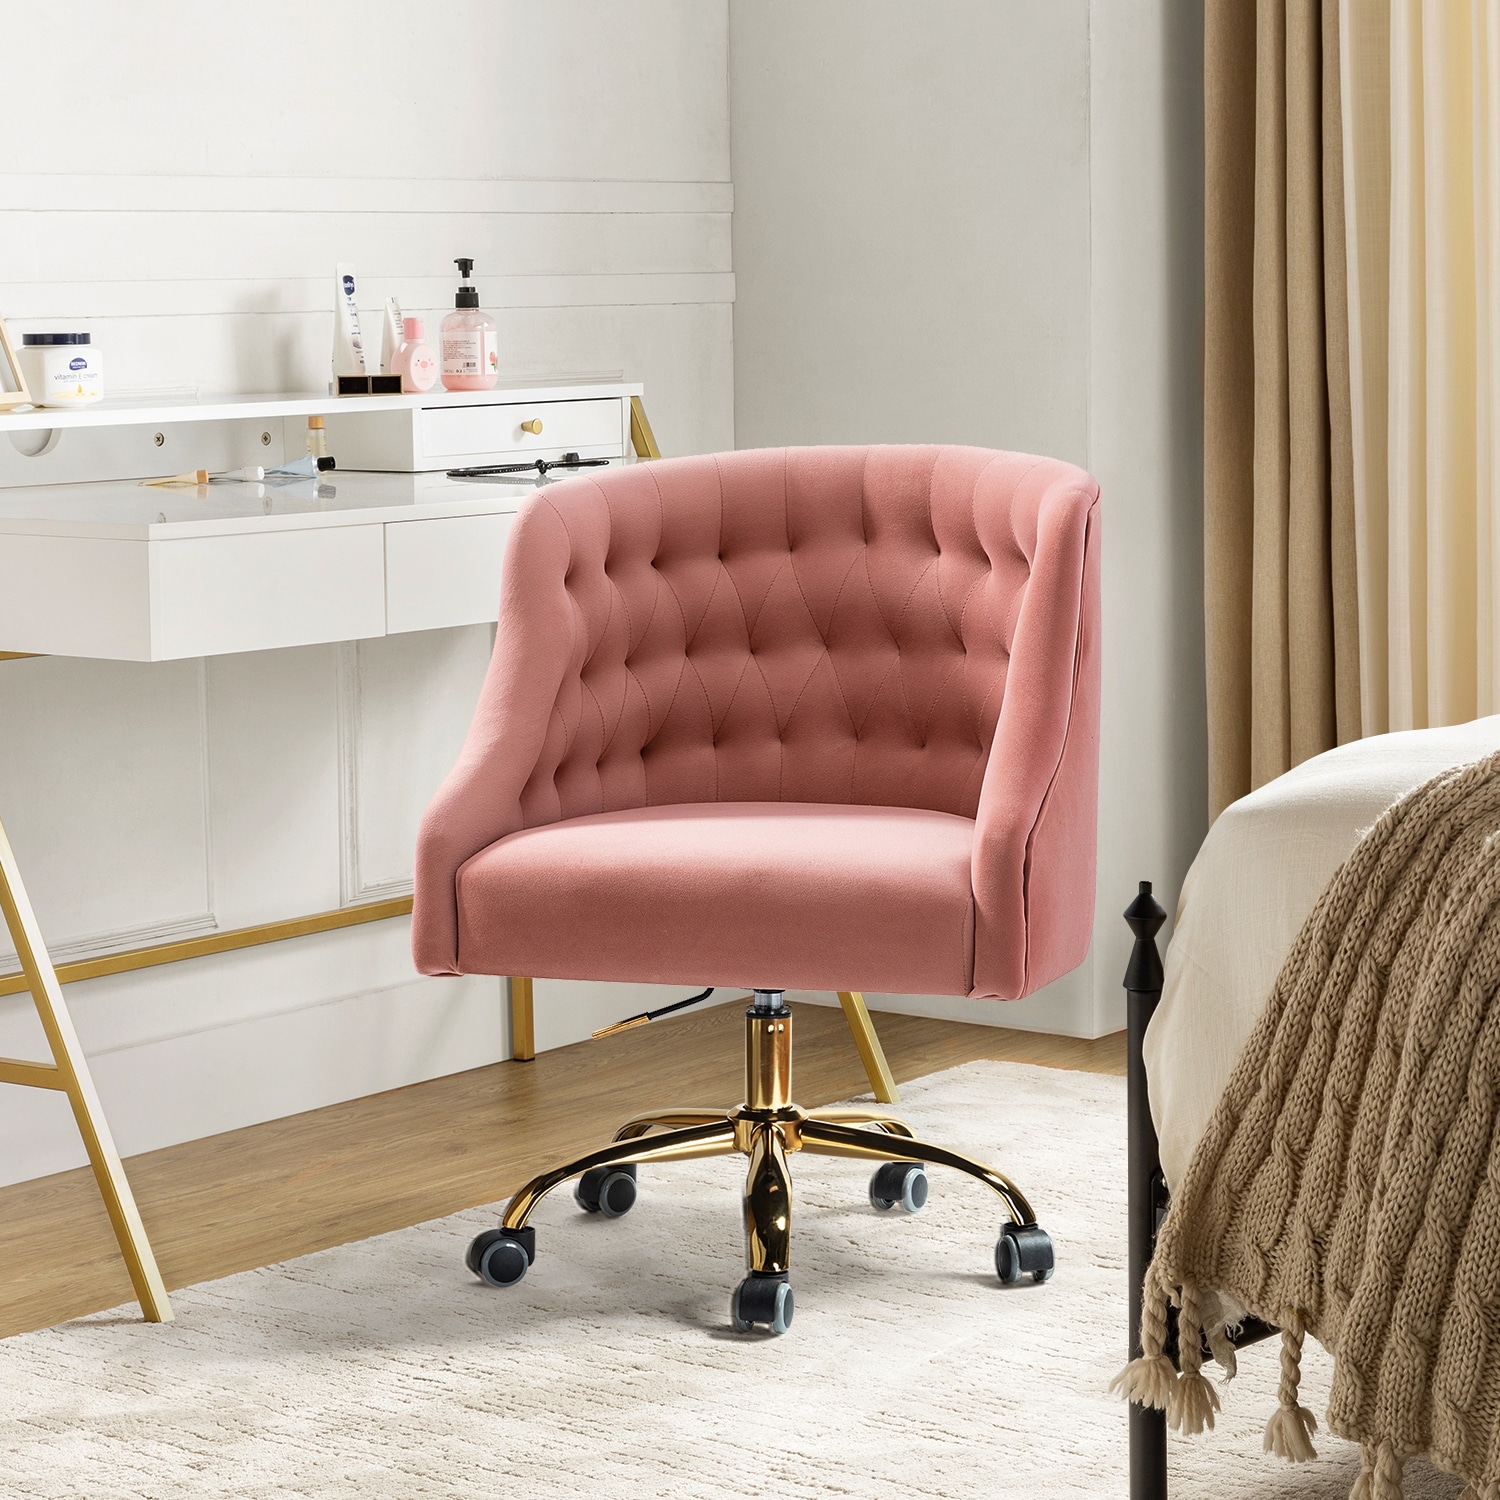 Tufted Velvet Upholstered Office Chair in Navy Blue - Single